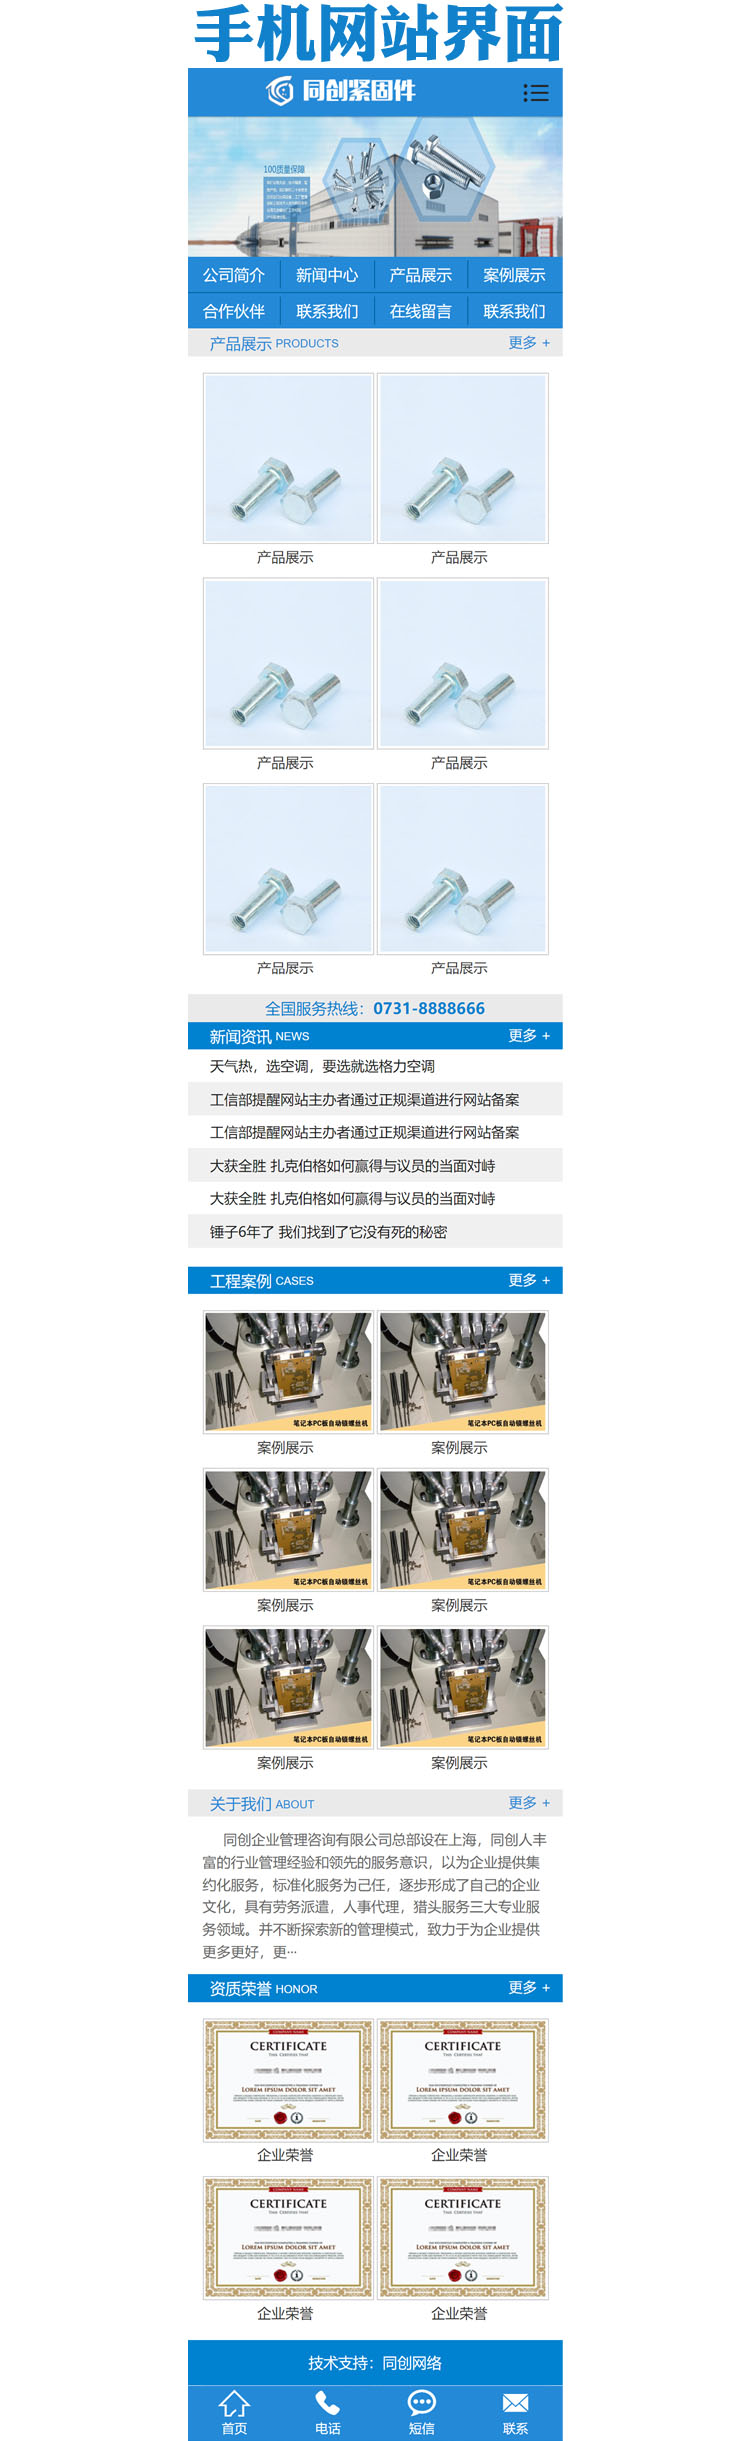 机械螺丝设备网站源码程序-XX187-3